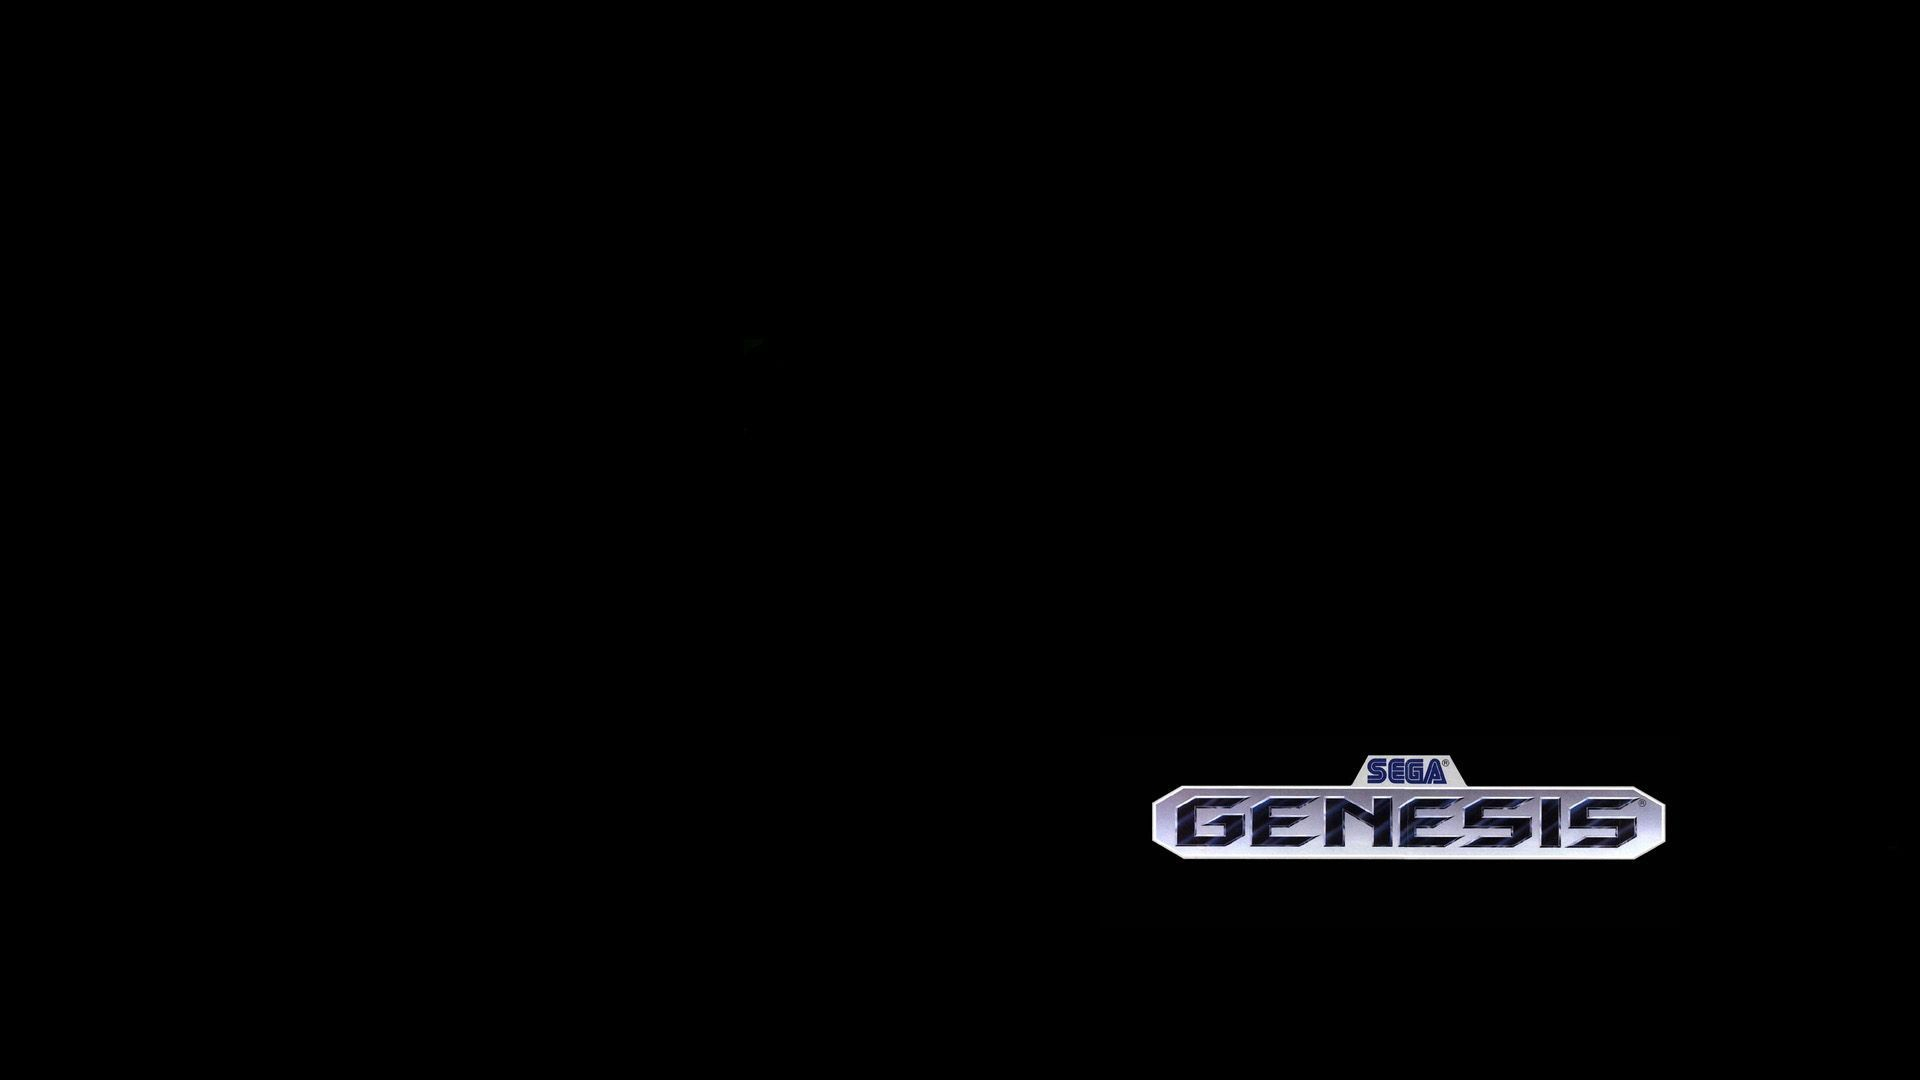 1920x1080 Sega Genesis Wallpapers Top Free Sega Genesis Backgrounds